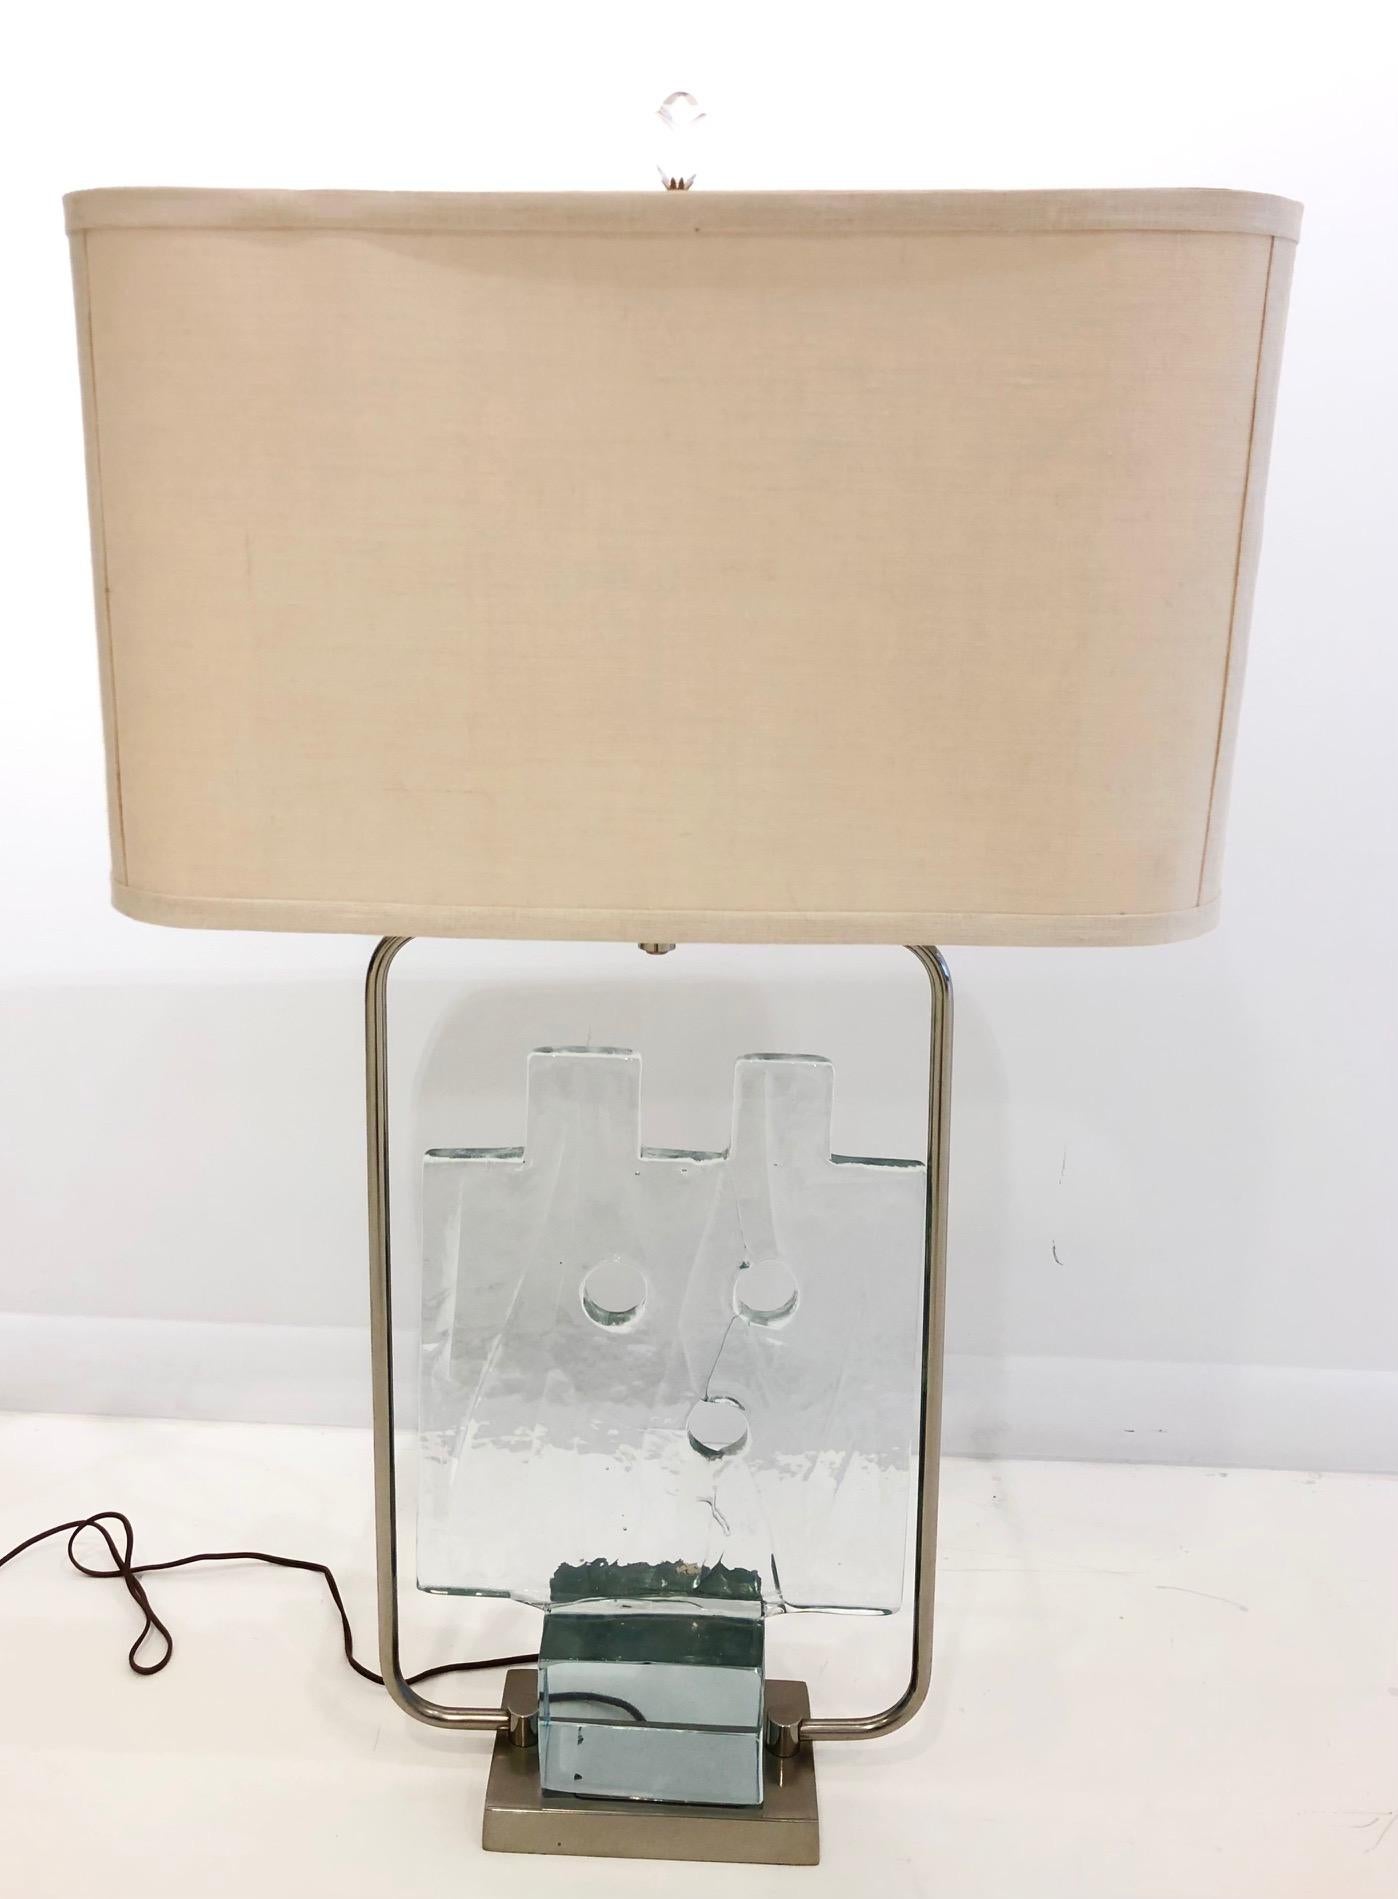 c. 1960, Italien. Das modernistische Spazialismo-Werk aus gegossenem Klarglas ist die größte von drei Größen und wiegt ca. 20 lbs. Es wurde von der Murano-Glasmanufaktur Salviati hergestellt, bei der Gaspari von 1955 bis 1968 Designdirektor war. Das